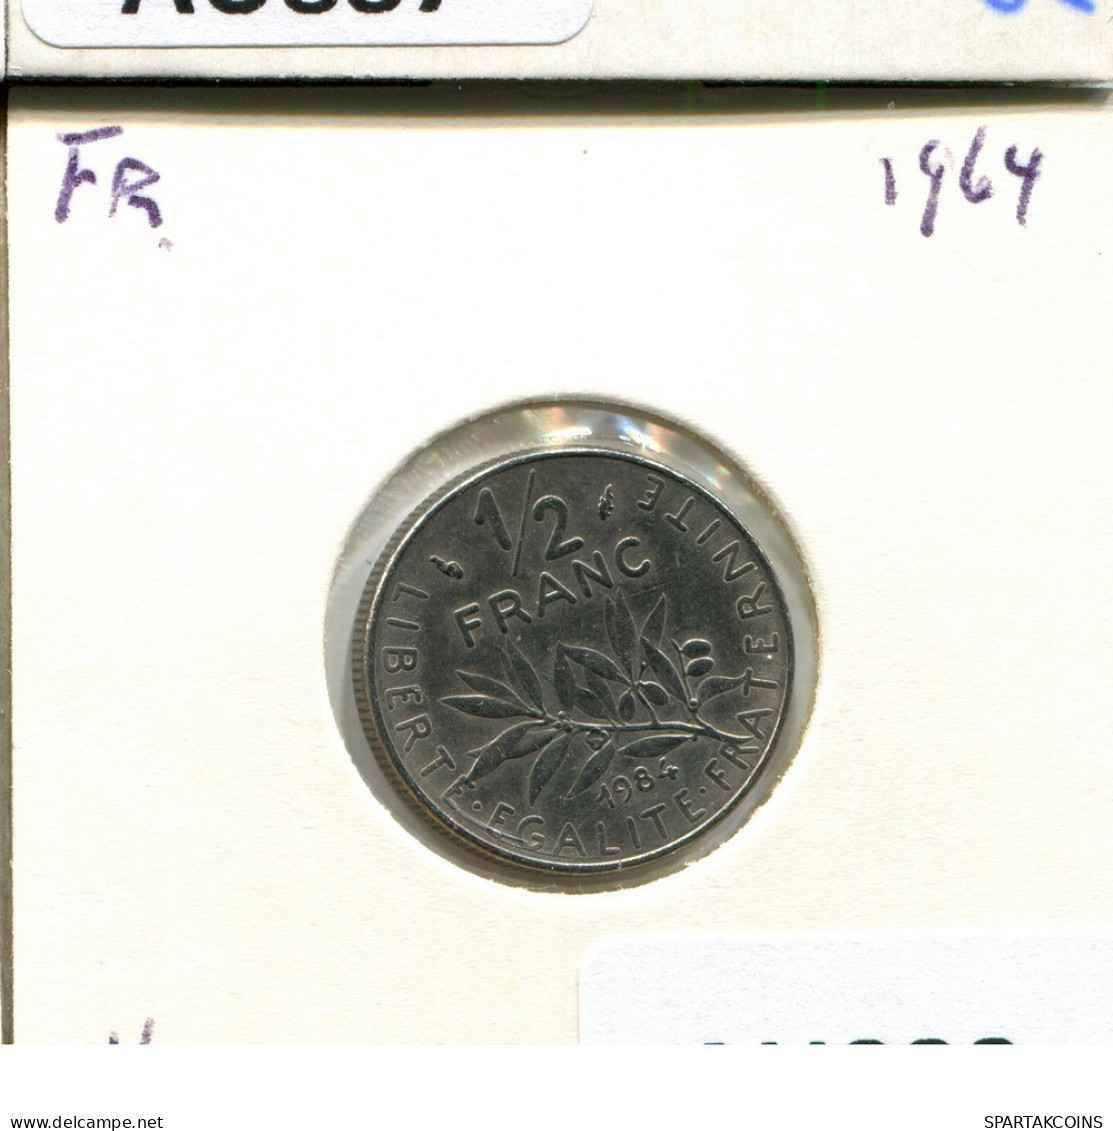 1/2 FRANC 1984 FRANKREICH FRANCE Französisch Münze #AU888.D.A - 1/2 Franc